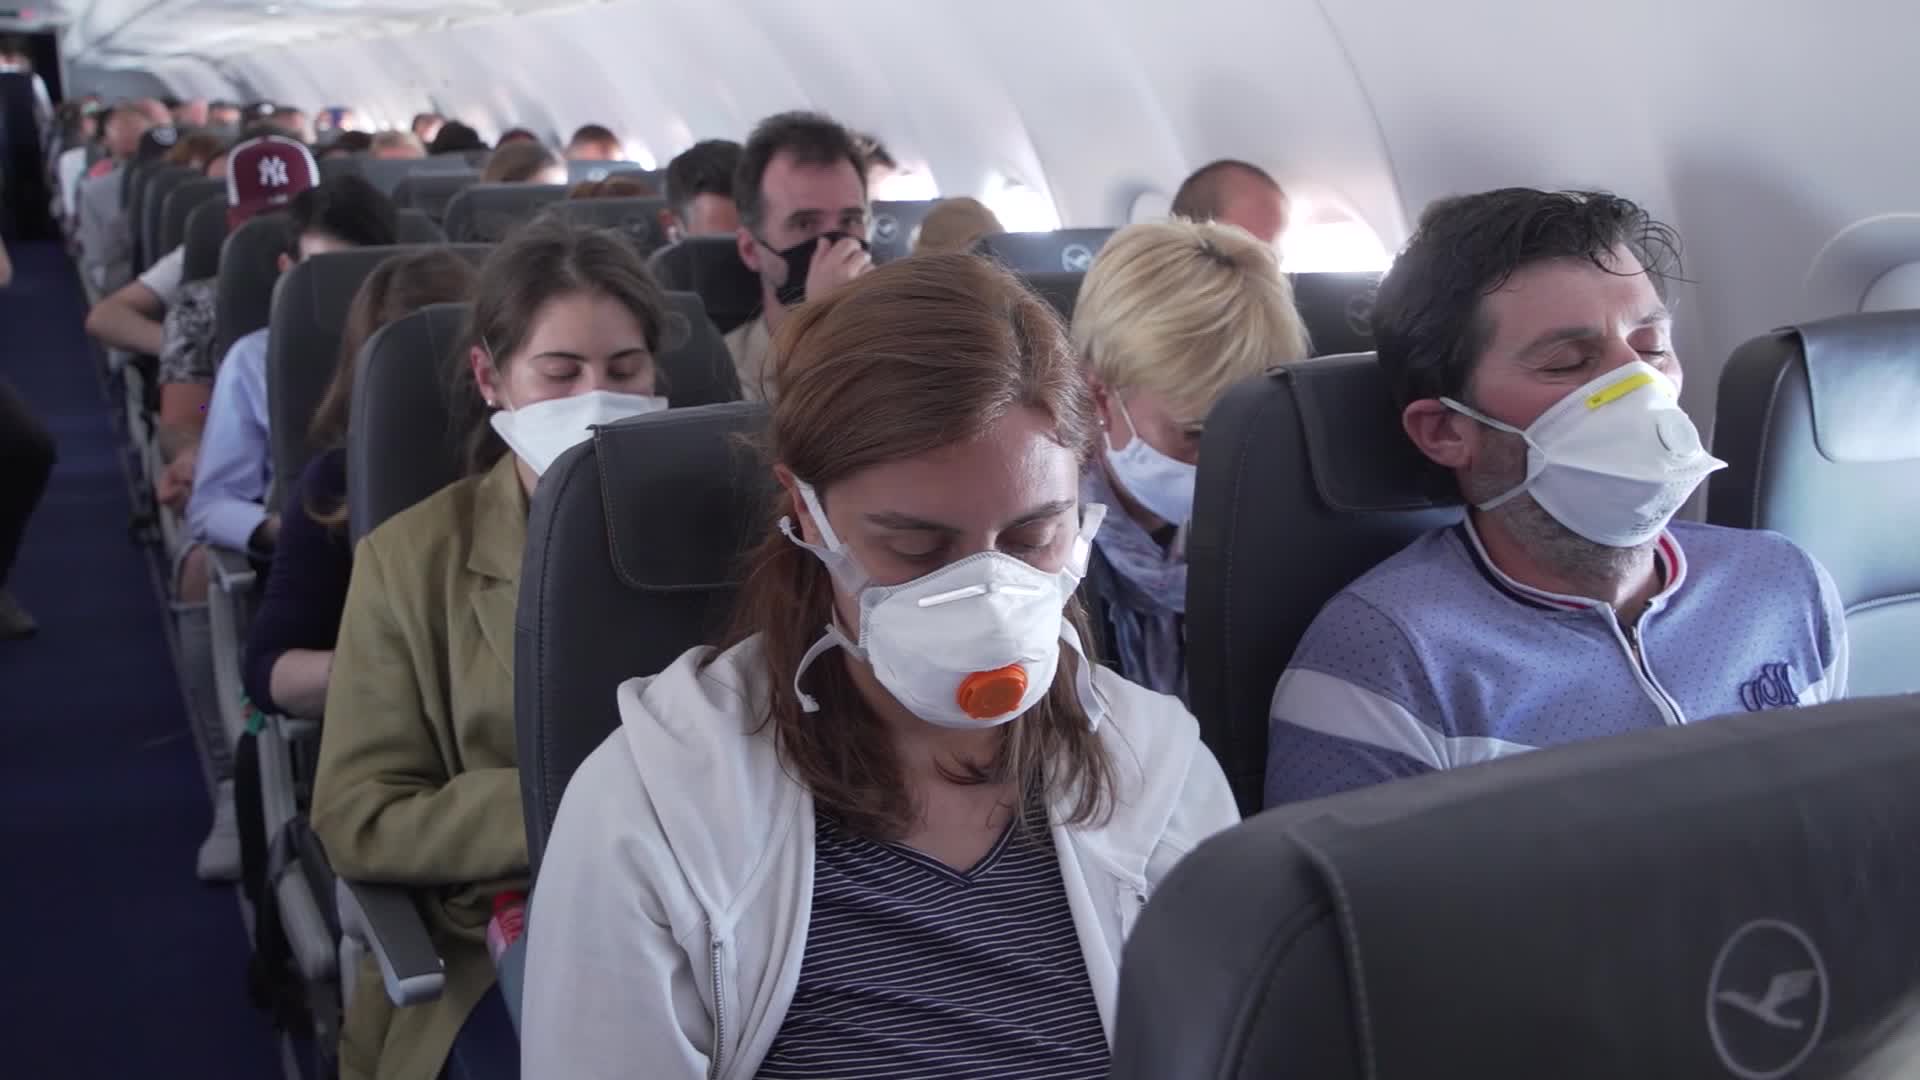 هل يجعل فيروس كورونا المسافرين بالطائرات أكثر عناداً؟